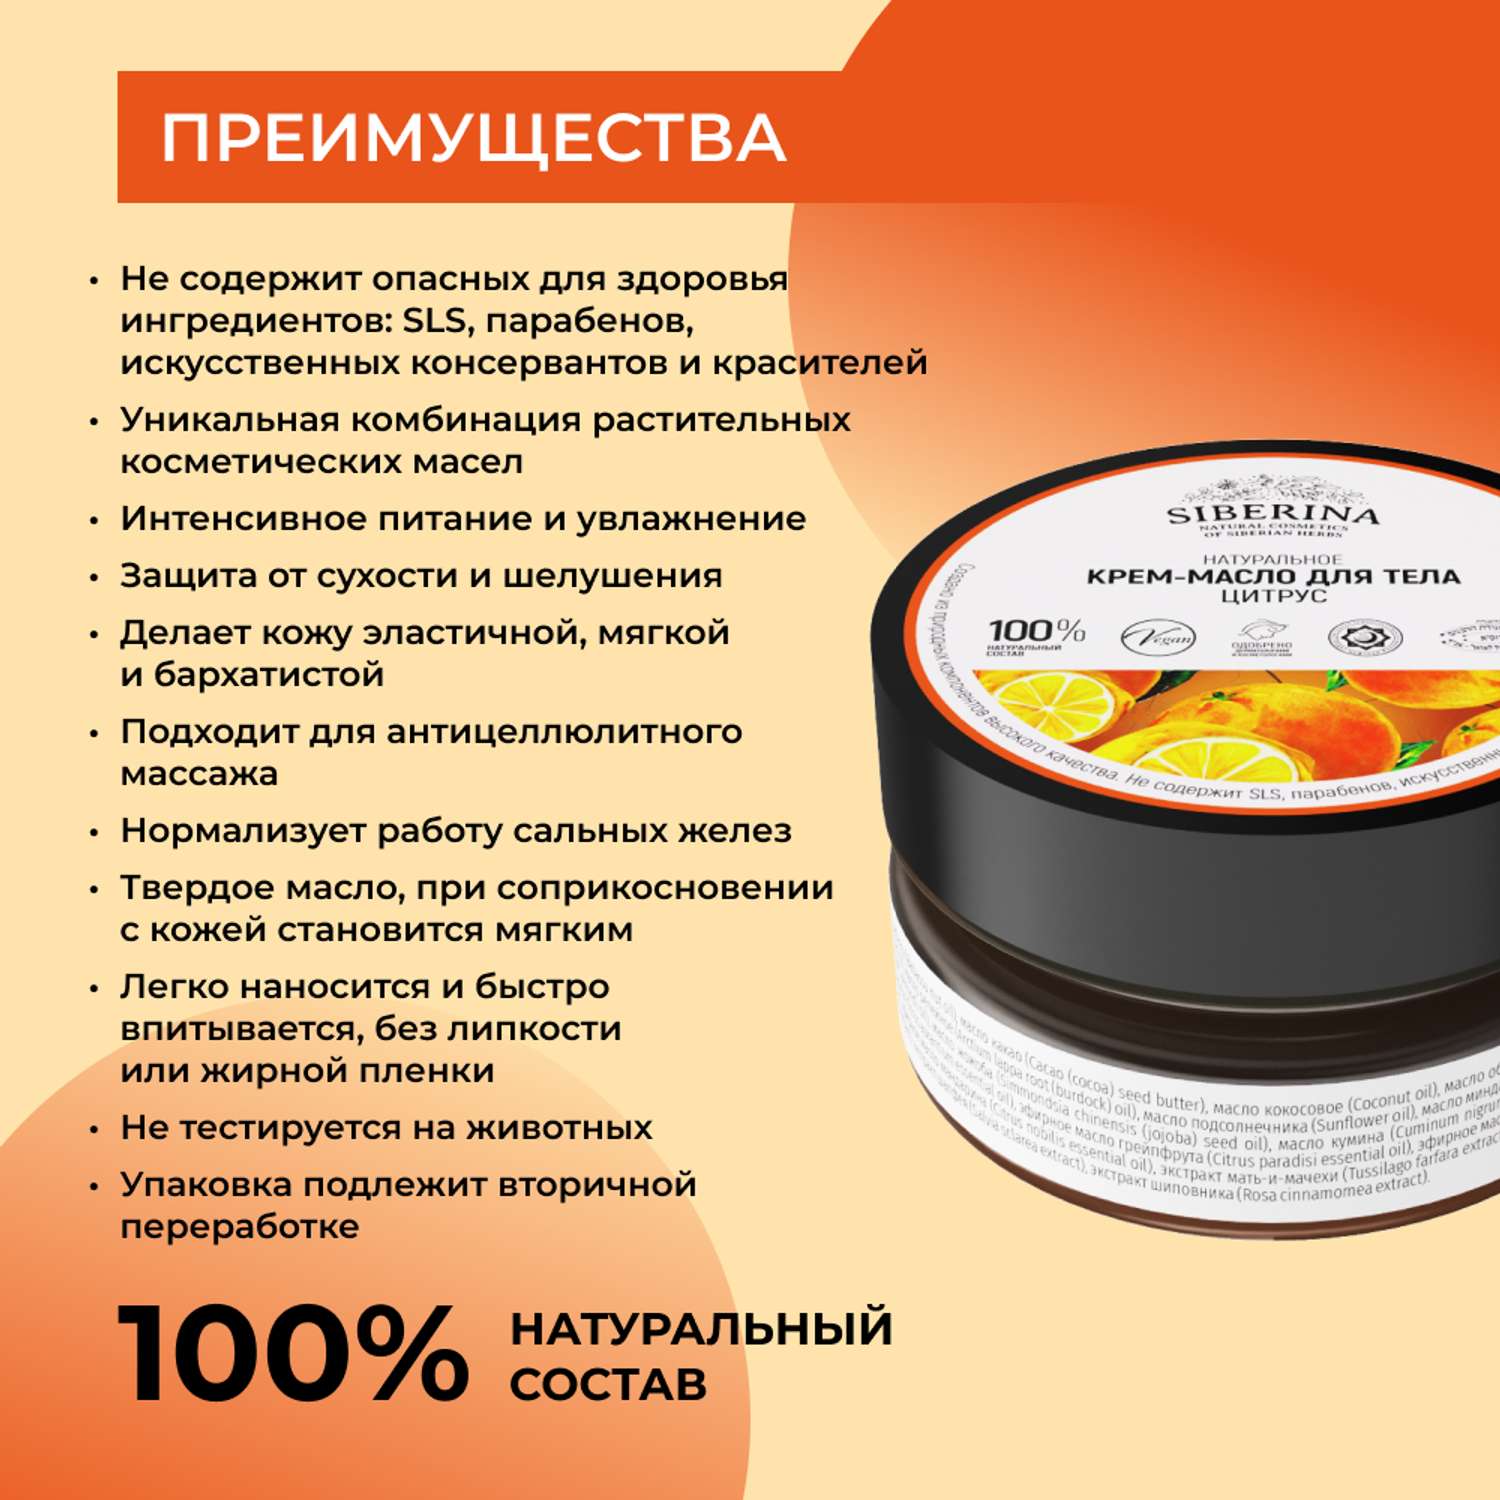 Крем-масло Siberina натуральное «Цитрус» антицеллюлитное 60 мл - фото 3